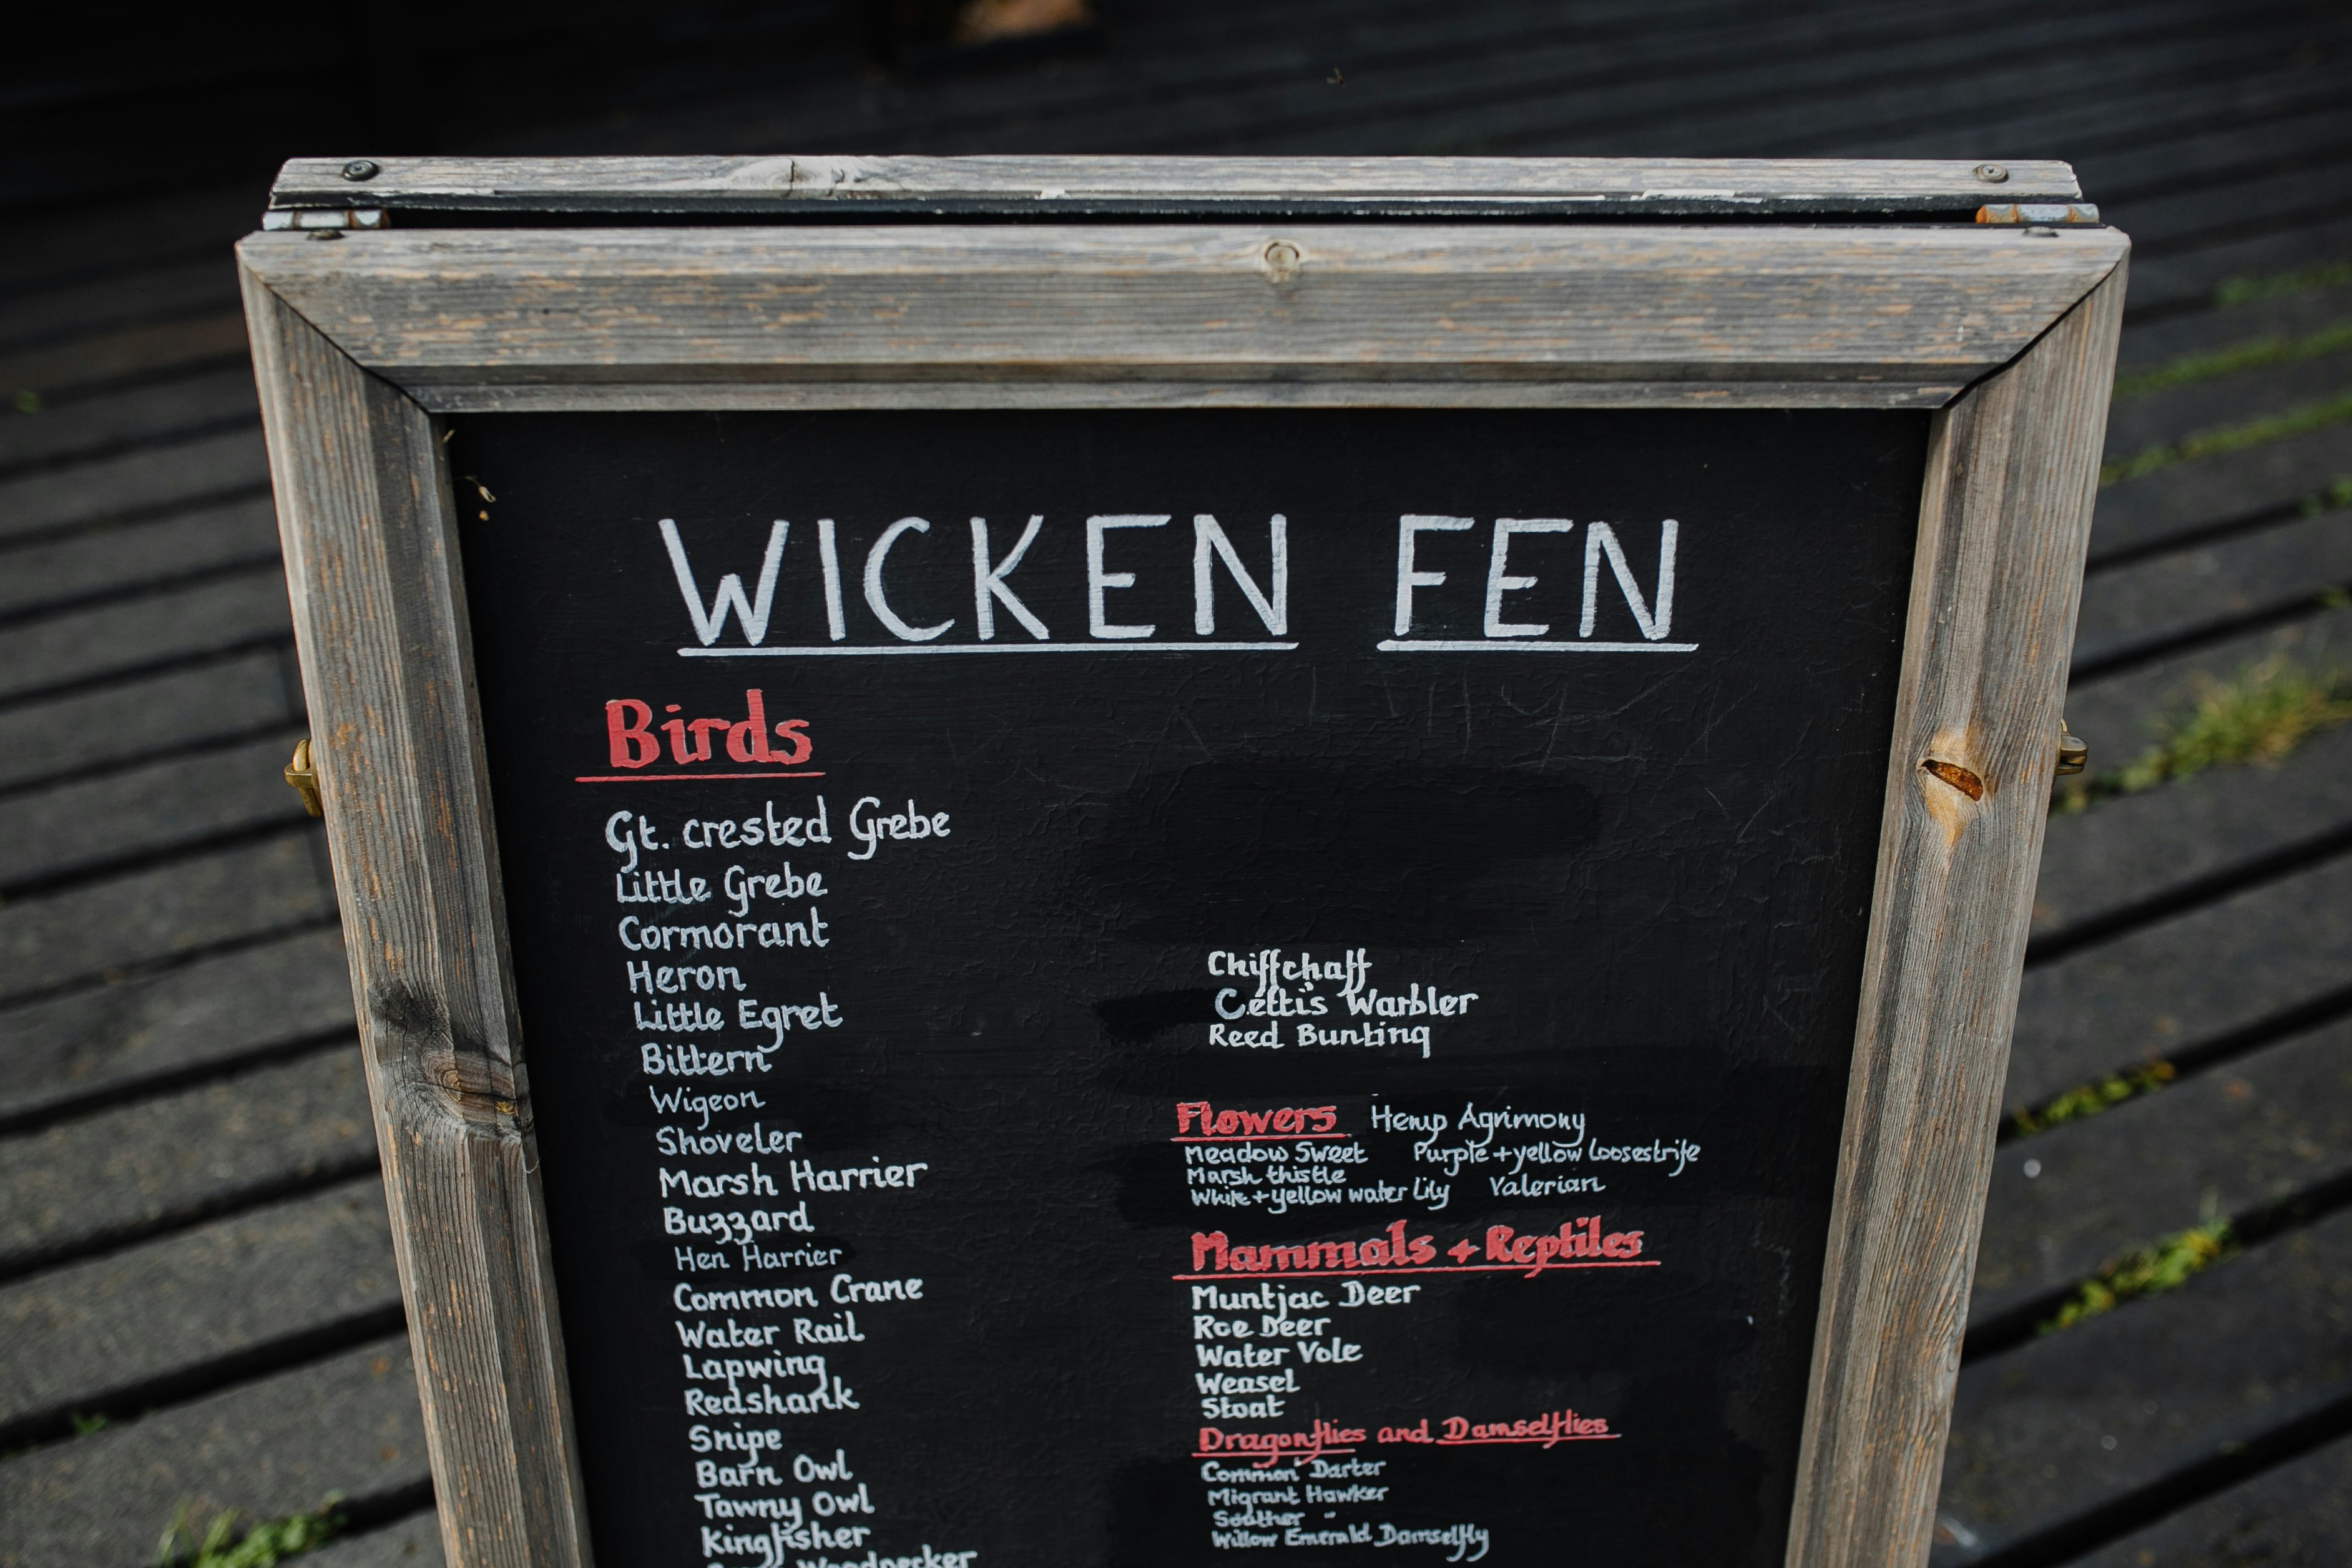 Wicken Fen menu